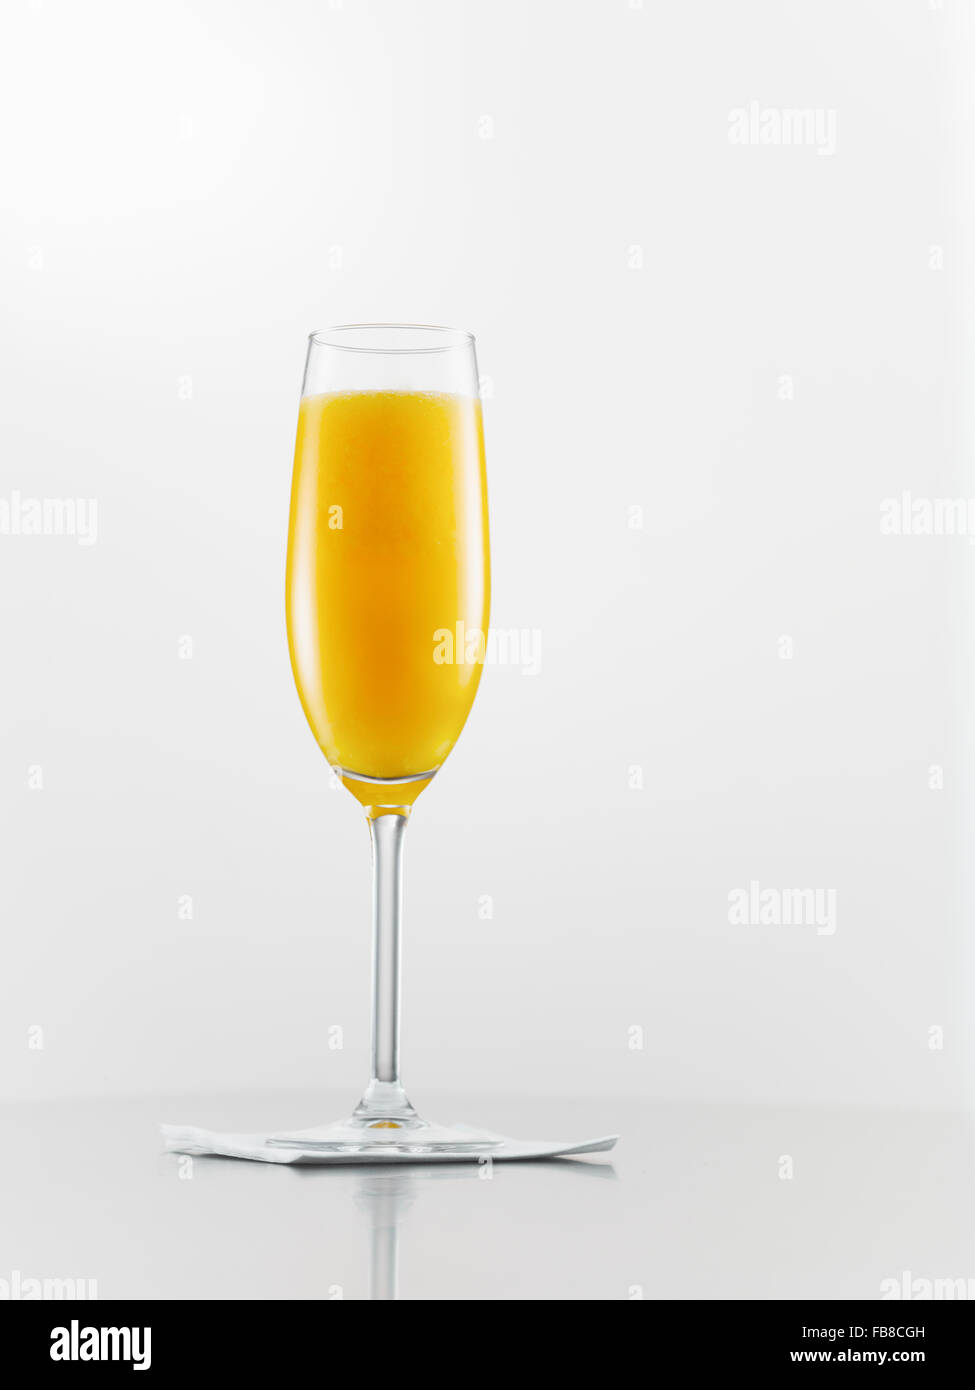 El jugo de naranja en champagne Foto de stock